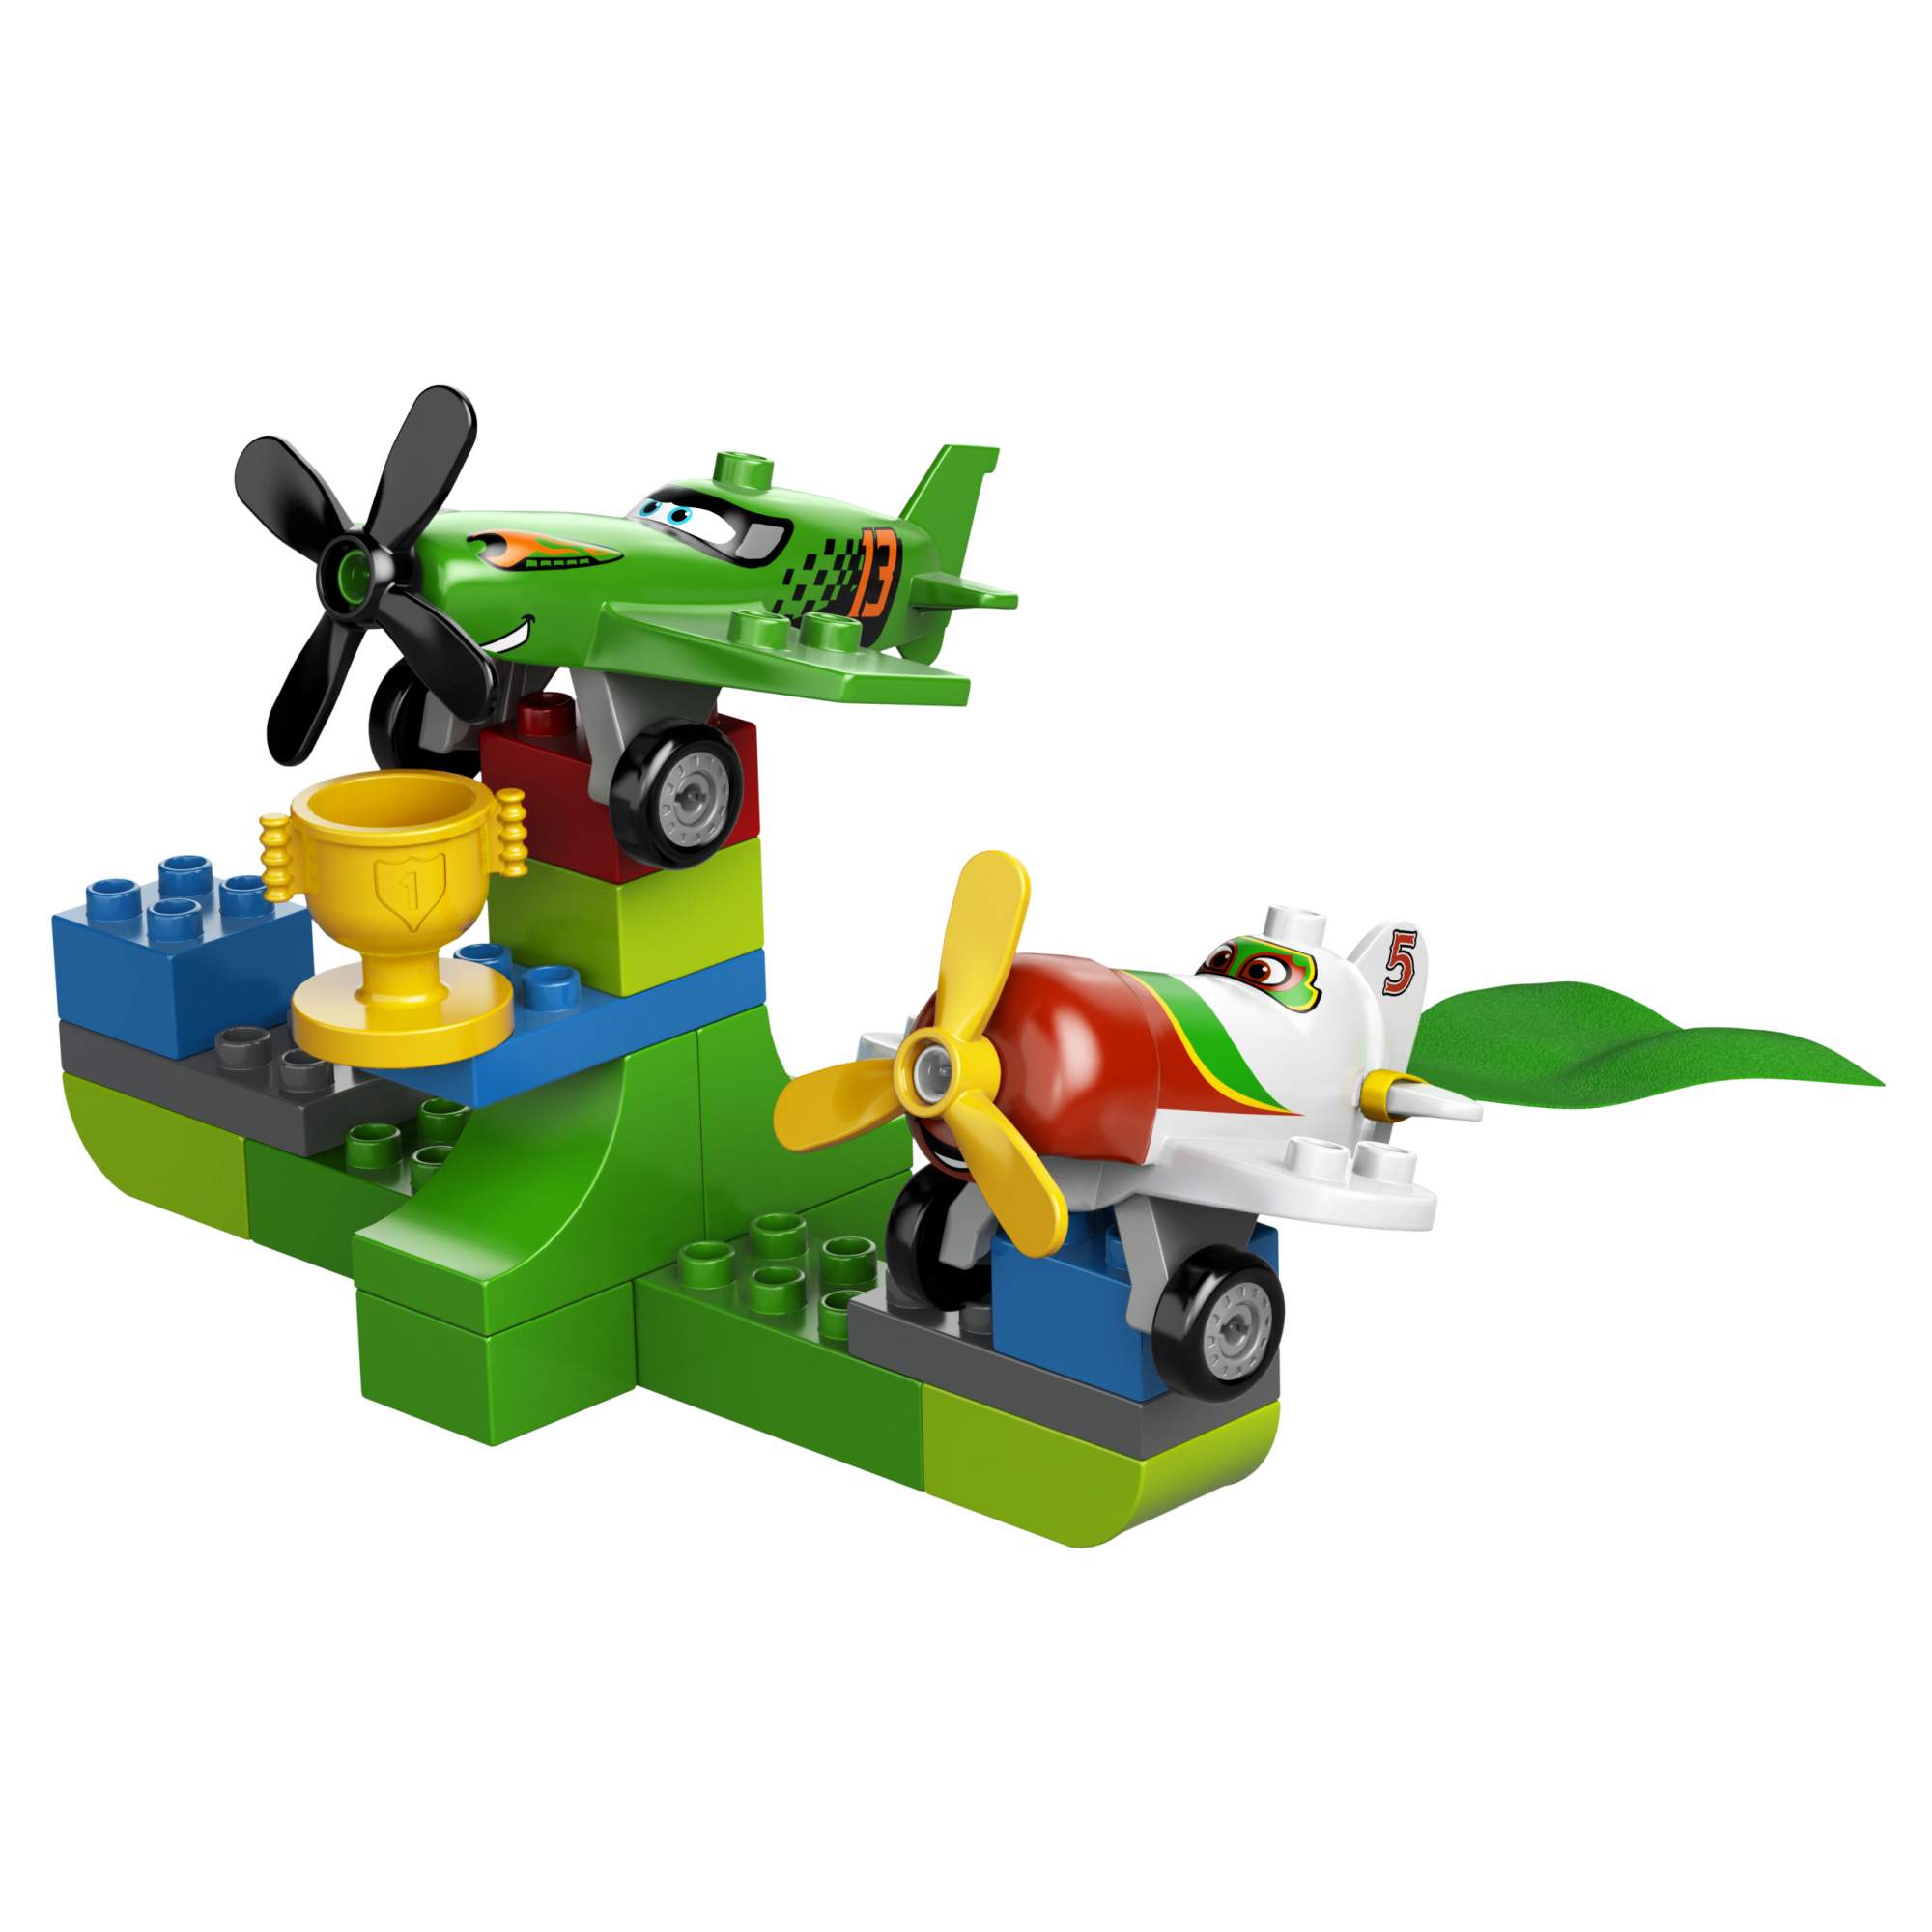 Конструктор LEGO Duplo 10510 воздушная гонка Рипслингера